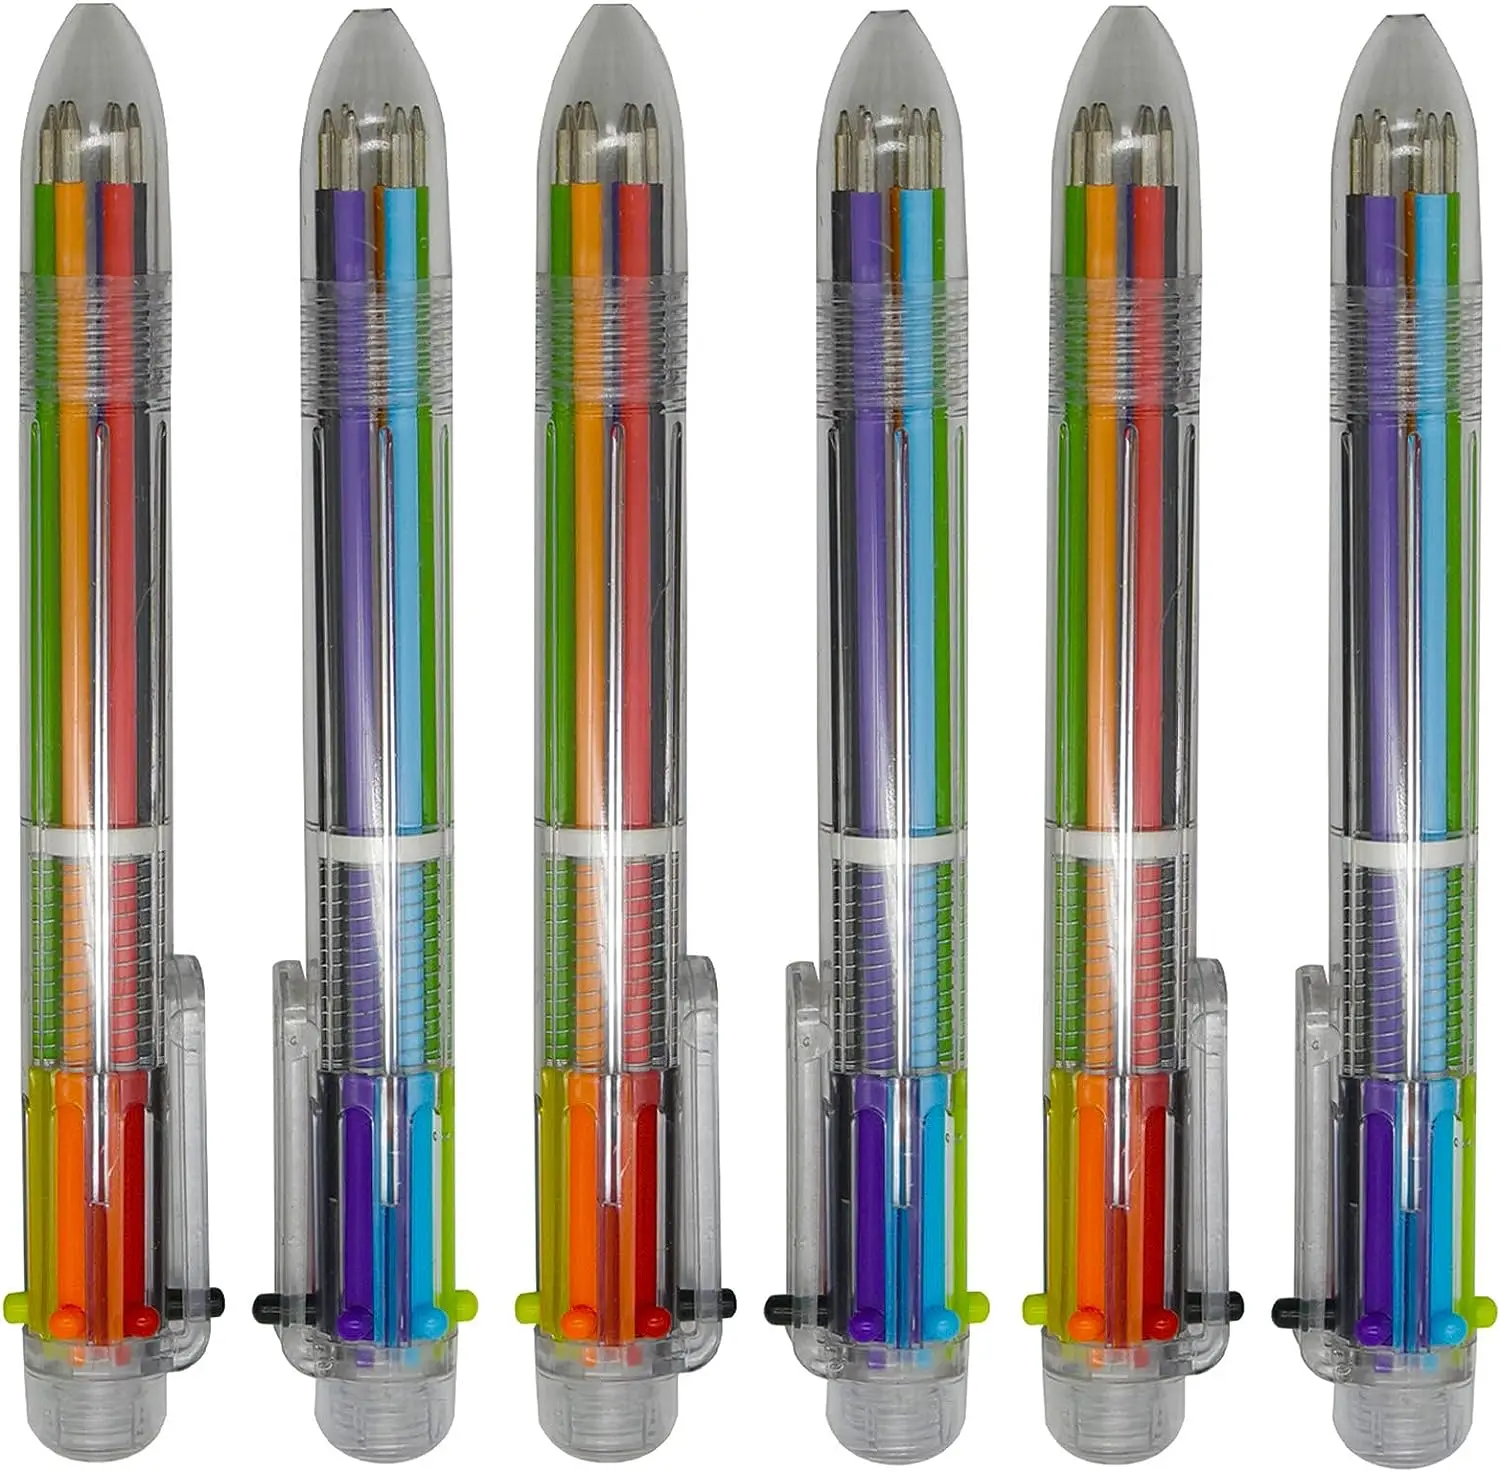 50st Veelkleurige Balpen 6-In-1 Diverse Kleuren Intrekbare Balpen Voor Gladde Schrijfwaren